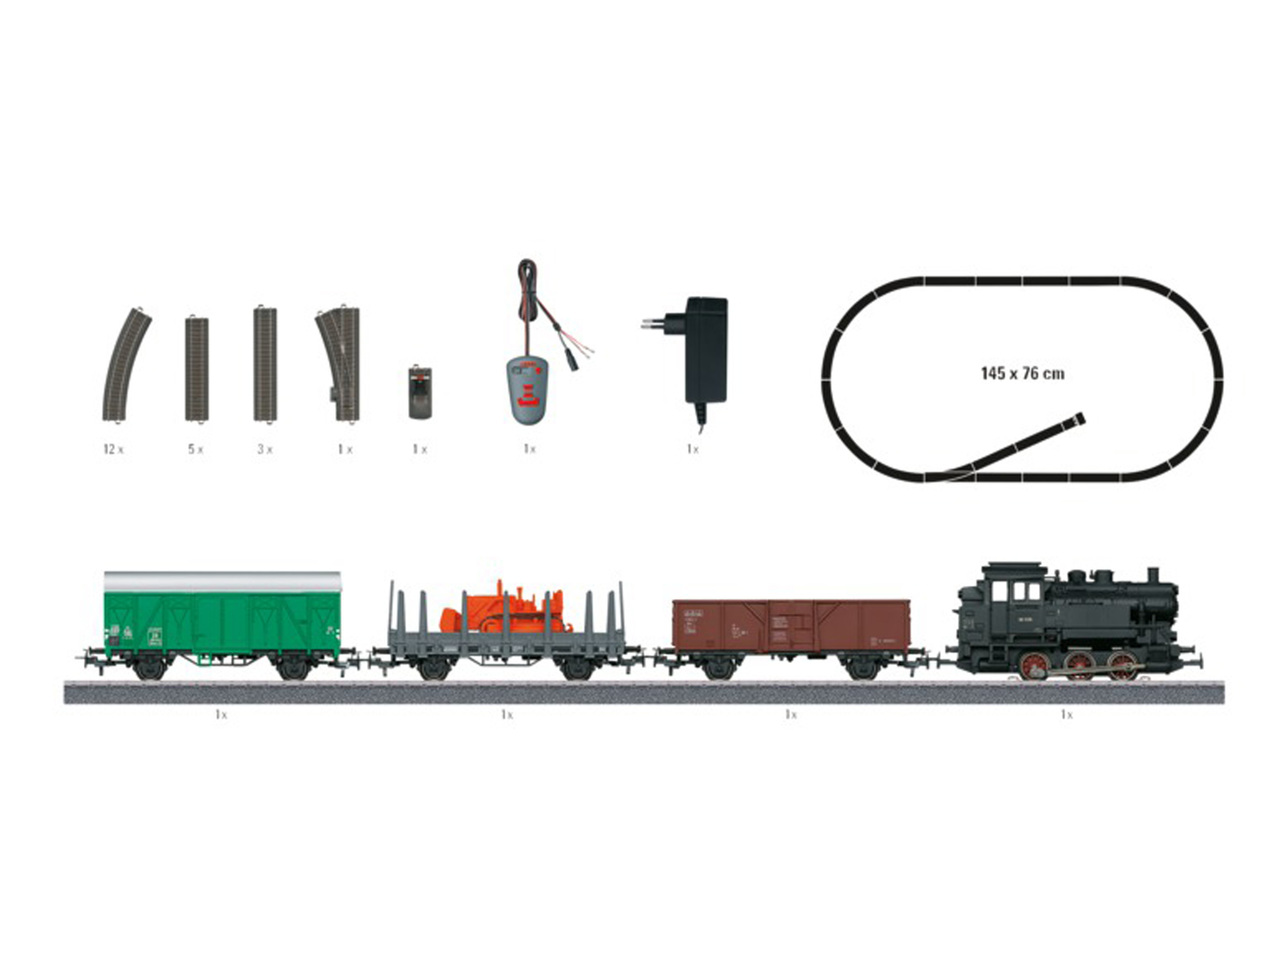 MÄRKLIN Freight Train Model Railroad Starter Set